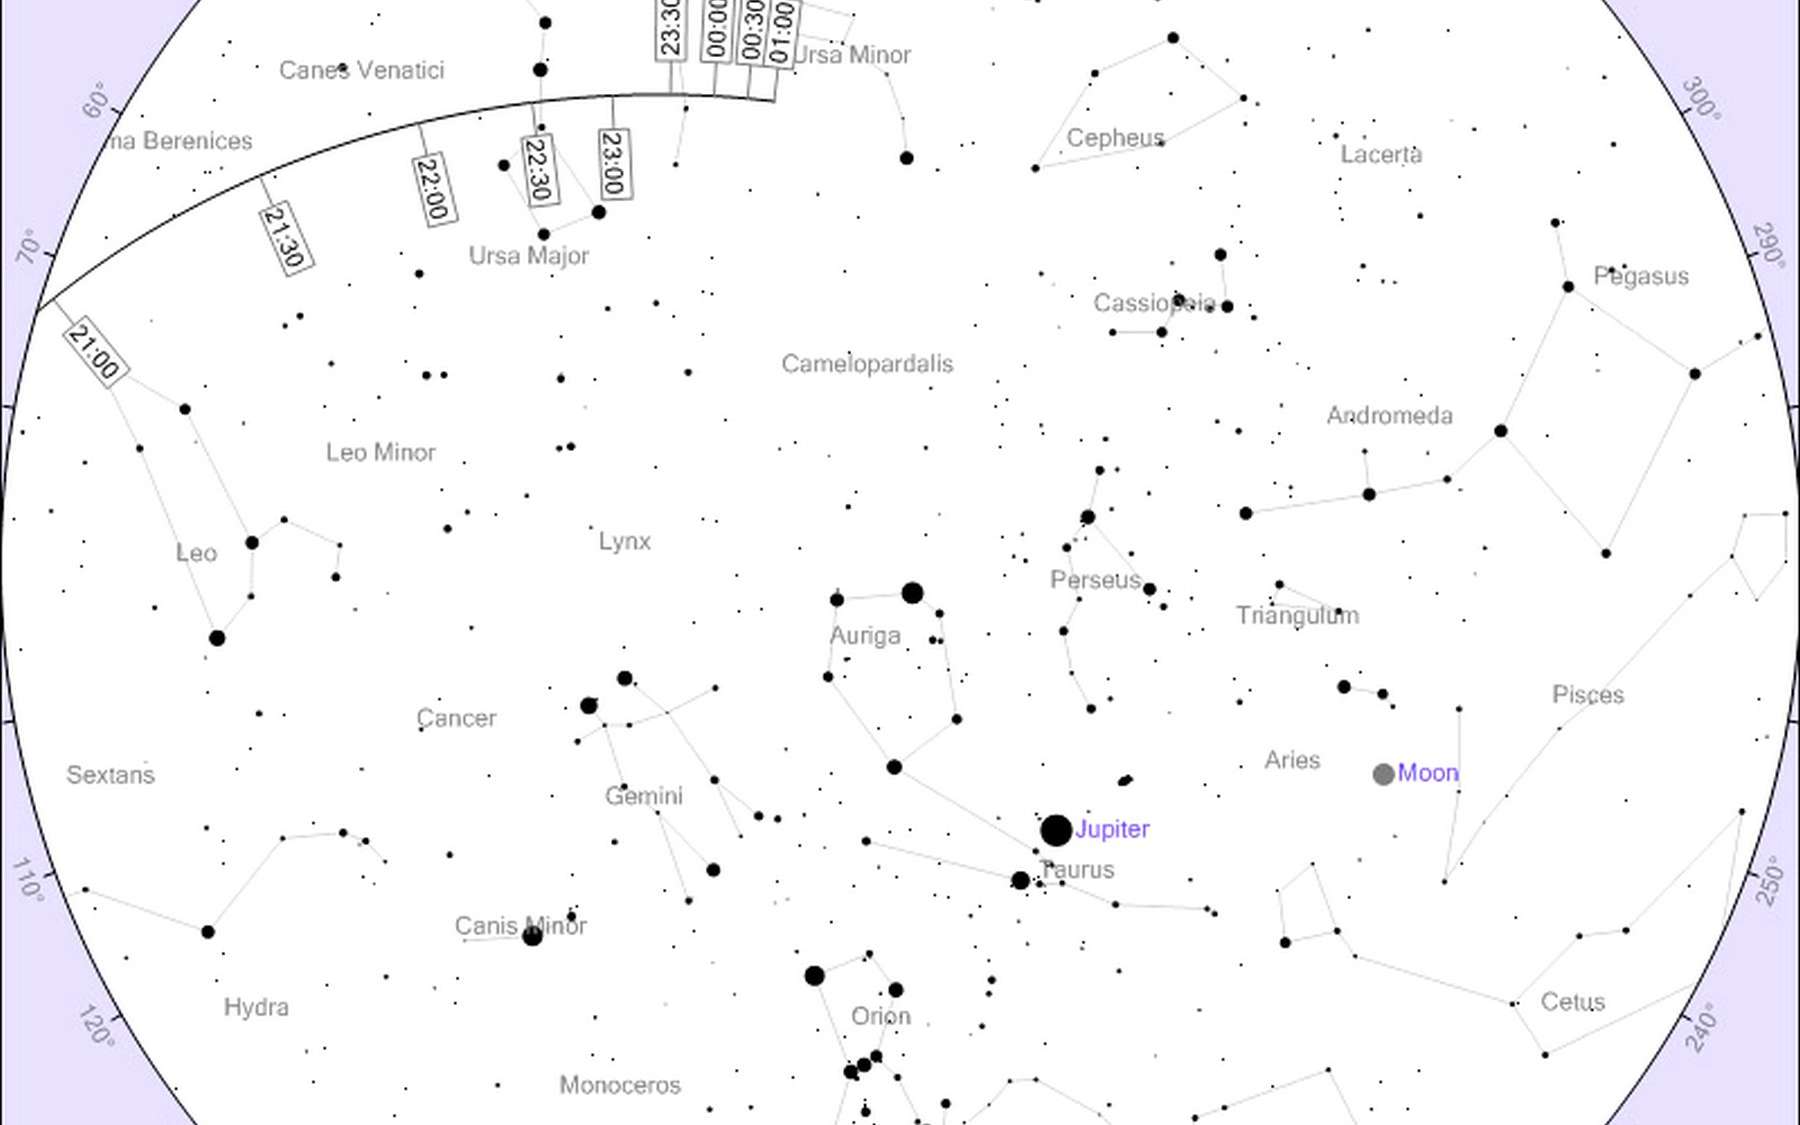 Carte générale du déplacement de l'astéroïde 2012 DA 14 dans le ciel français au cours de la soirée du 15 février. © Heavens Above